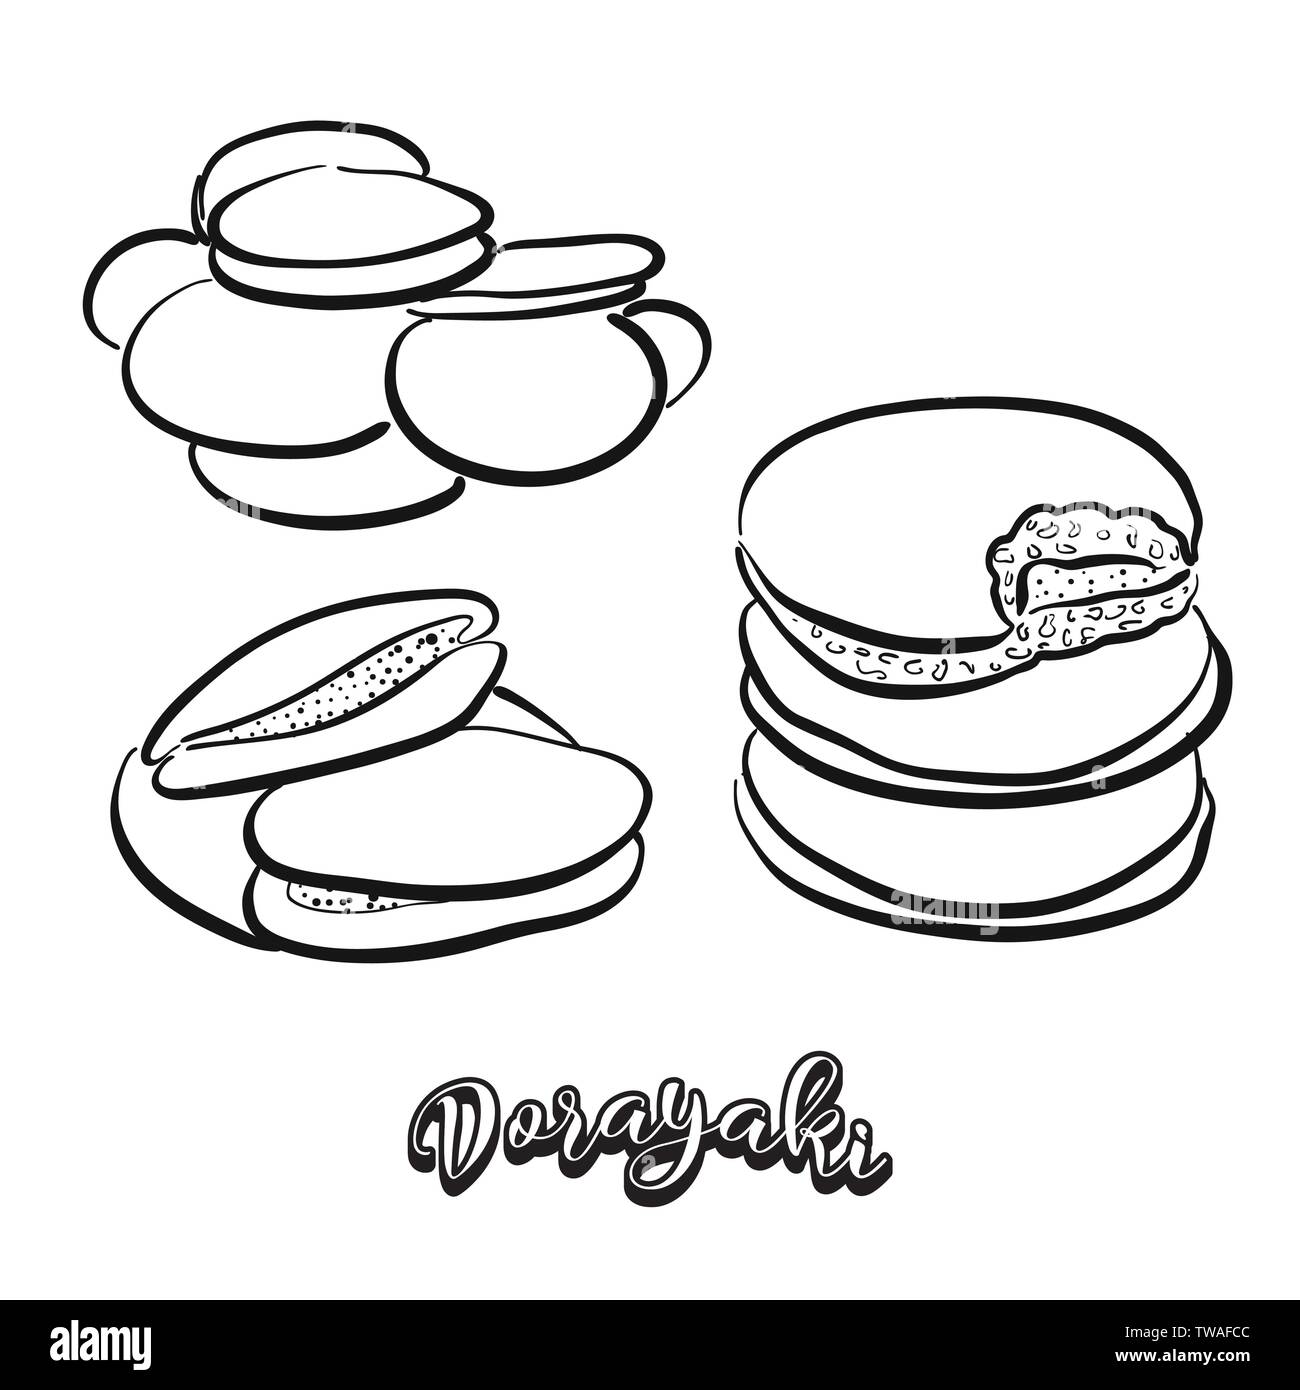 Dorayaki essen Skizze auf dem Schwarzen Brett. Vektor Zeichnung der Pfannkuchen, in der Regel in Japan bekannt. Essen Abbildung Serie. Stock Vektor